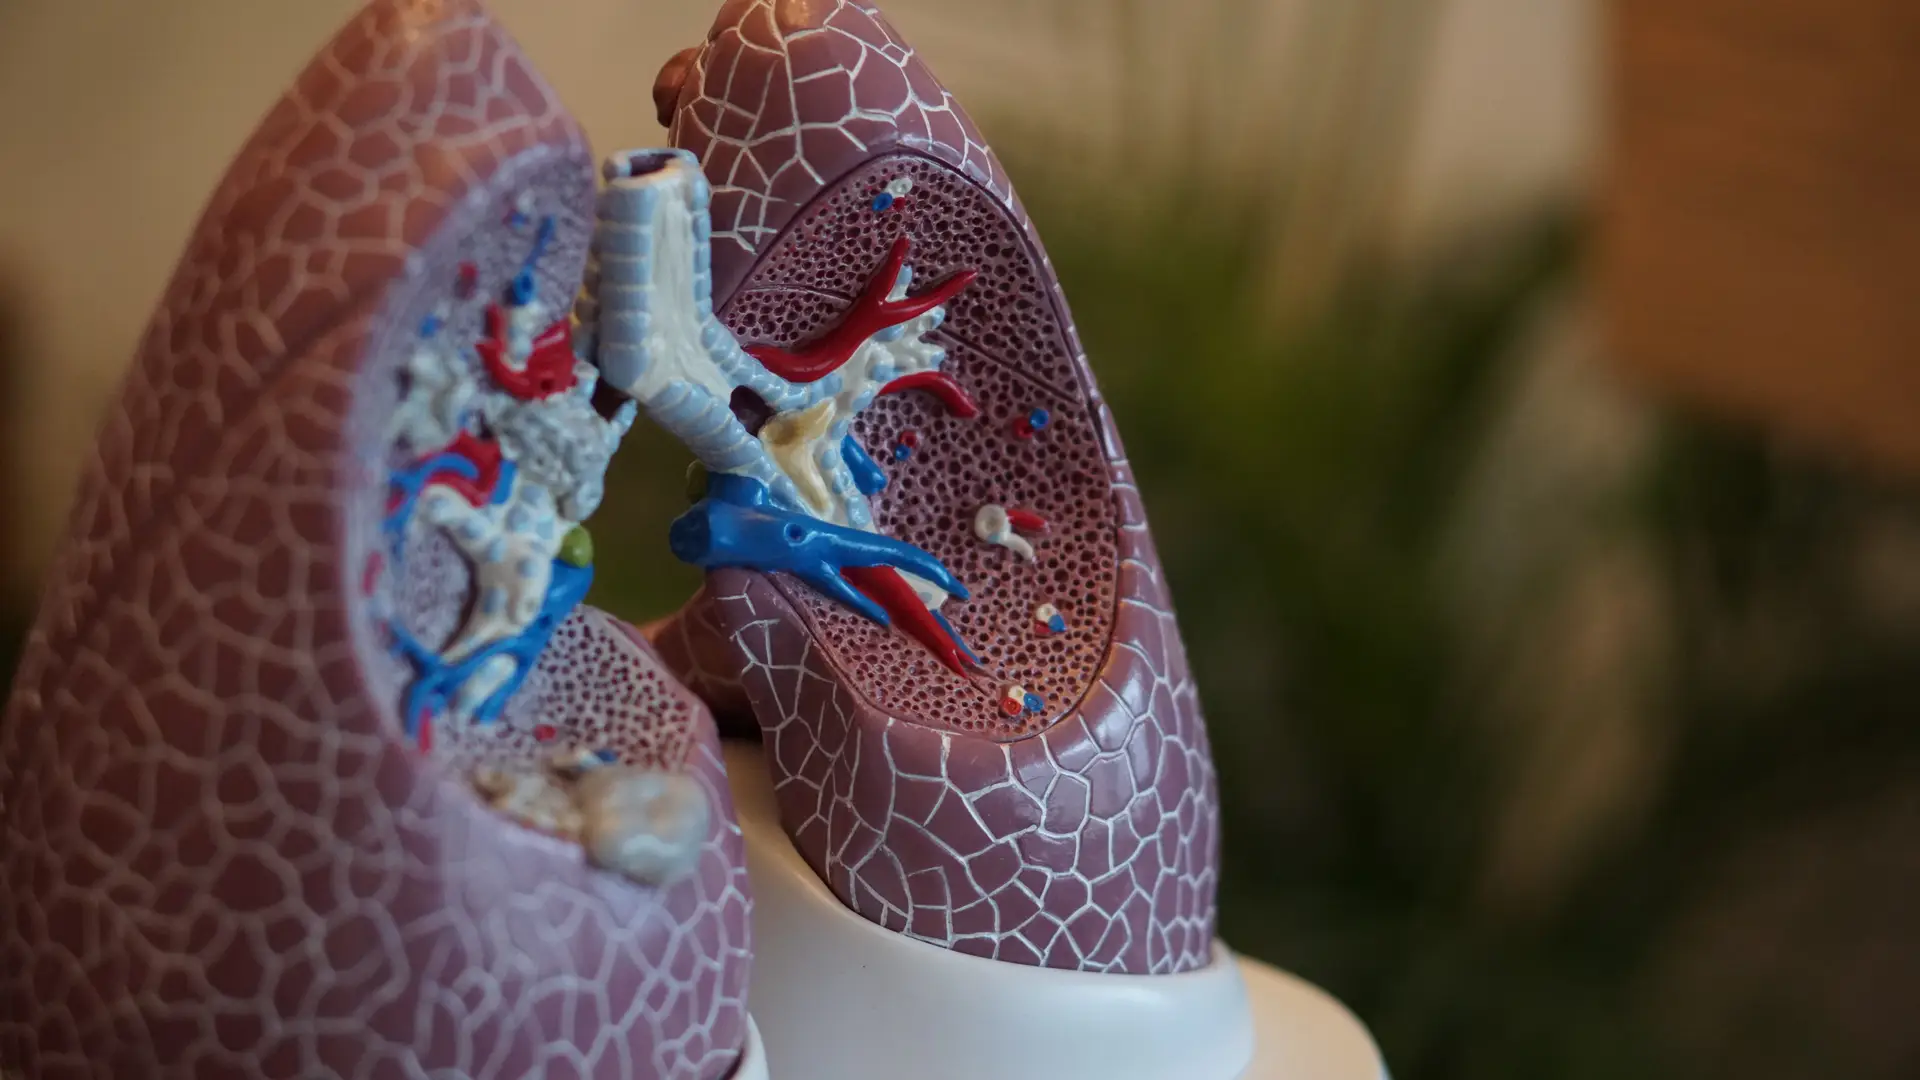 13 óbitos por cada 15 casos diagnosticados é a realidade atual para o cancro do pulmão